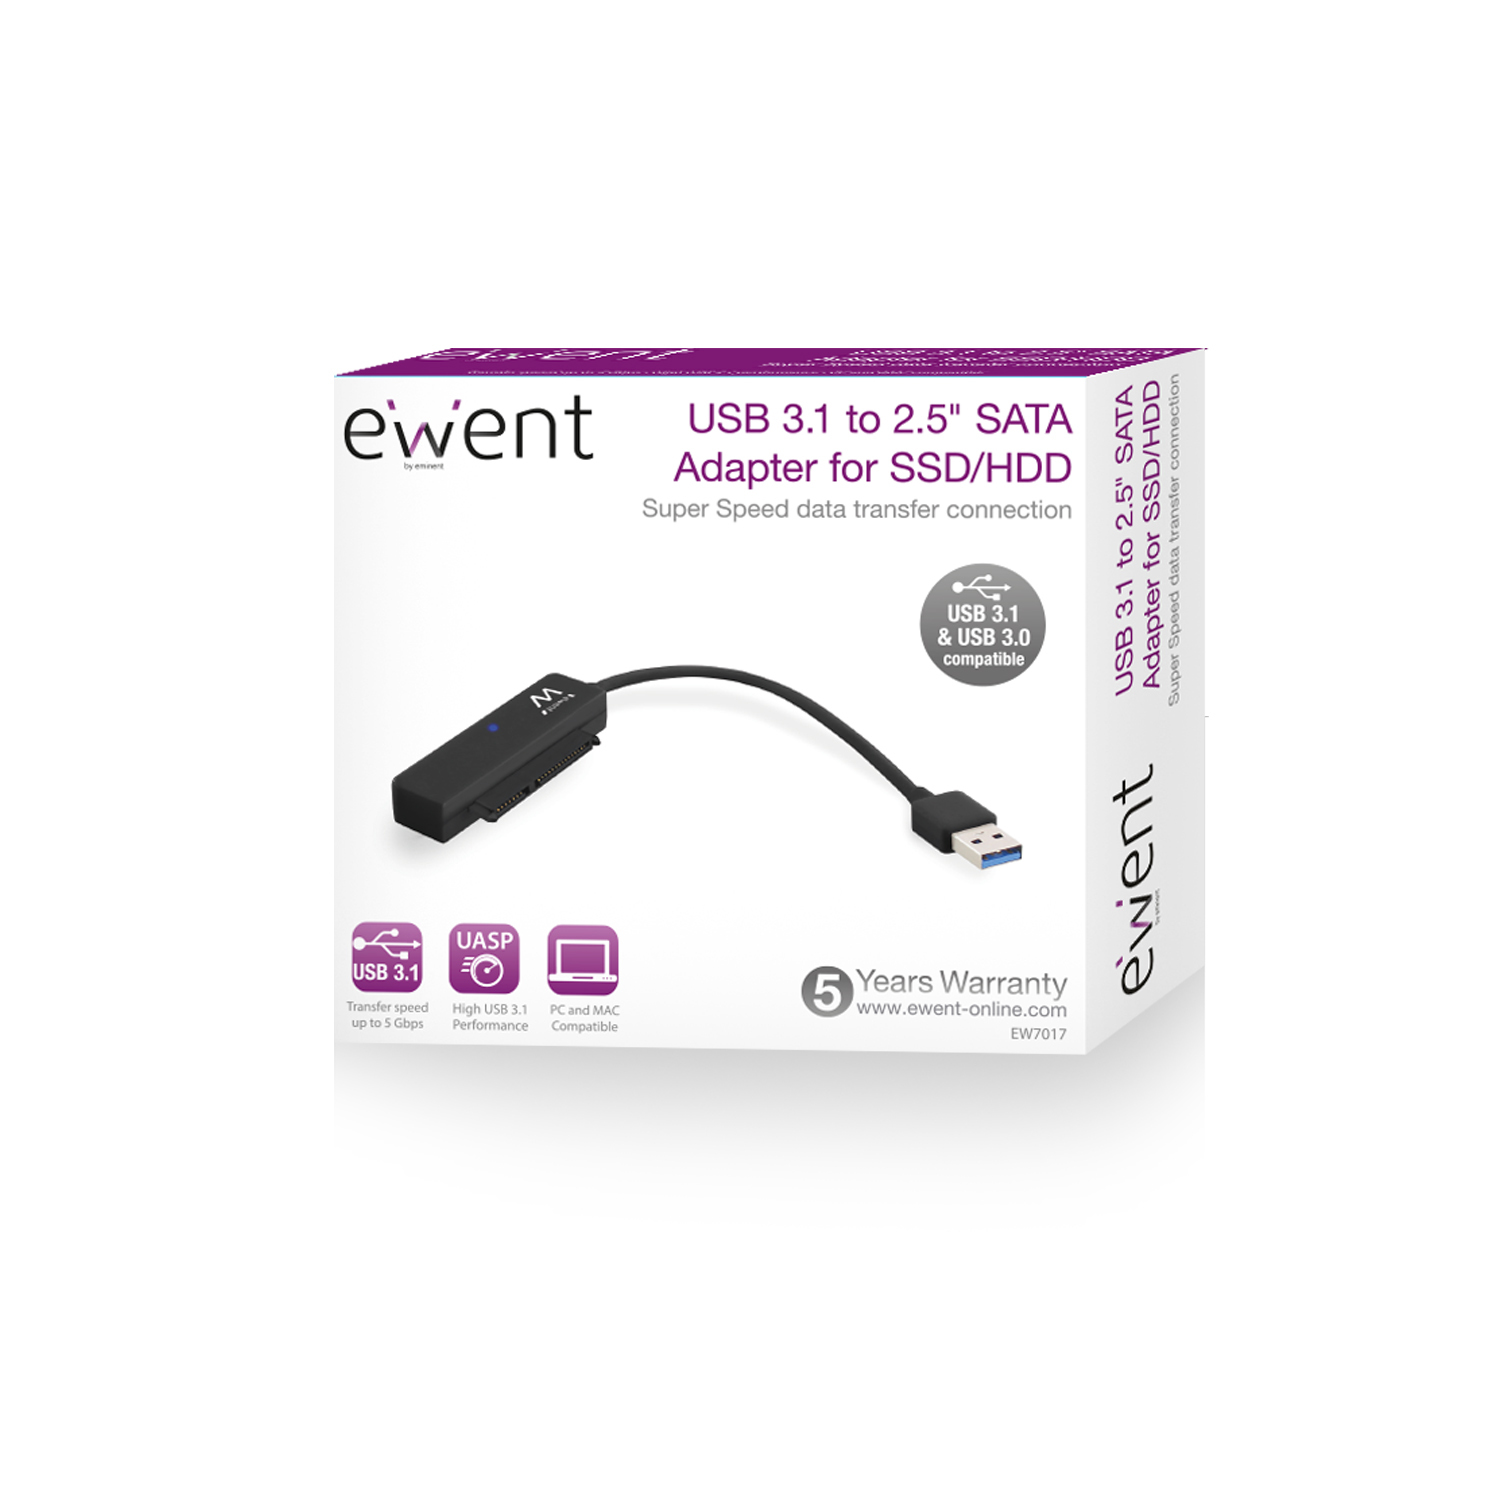 ADATTATORE EWENT USB 3.1 A SATA 2.5